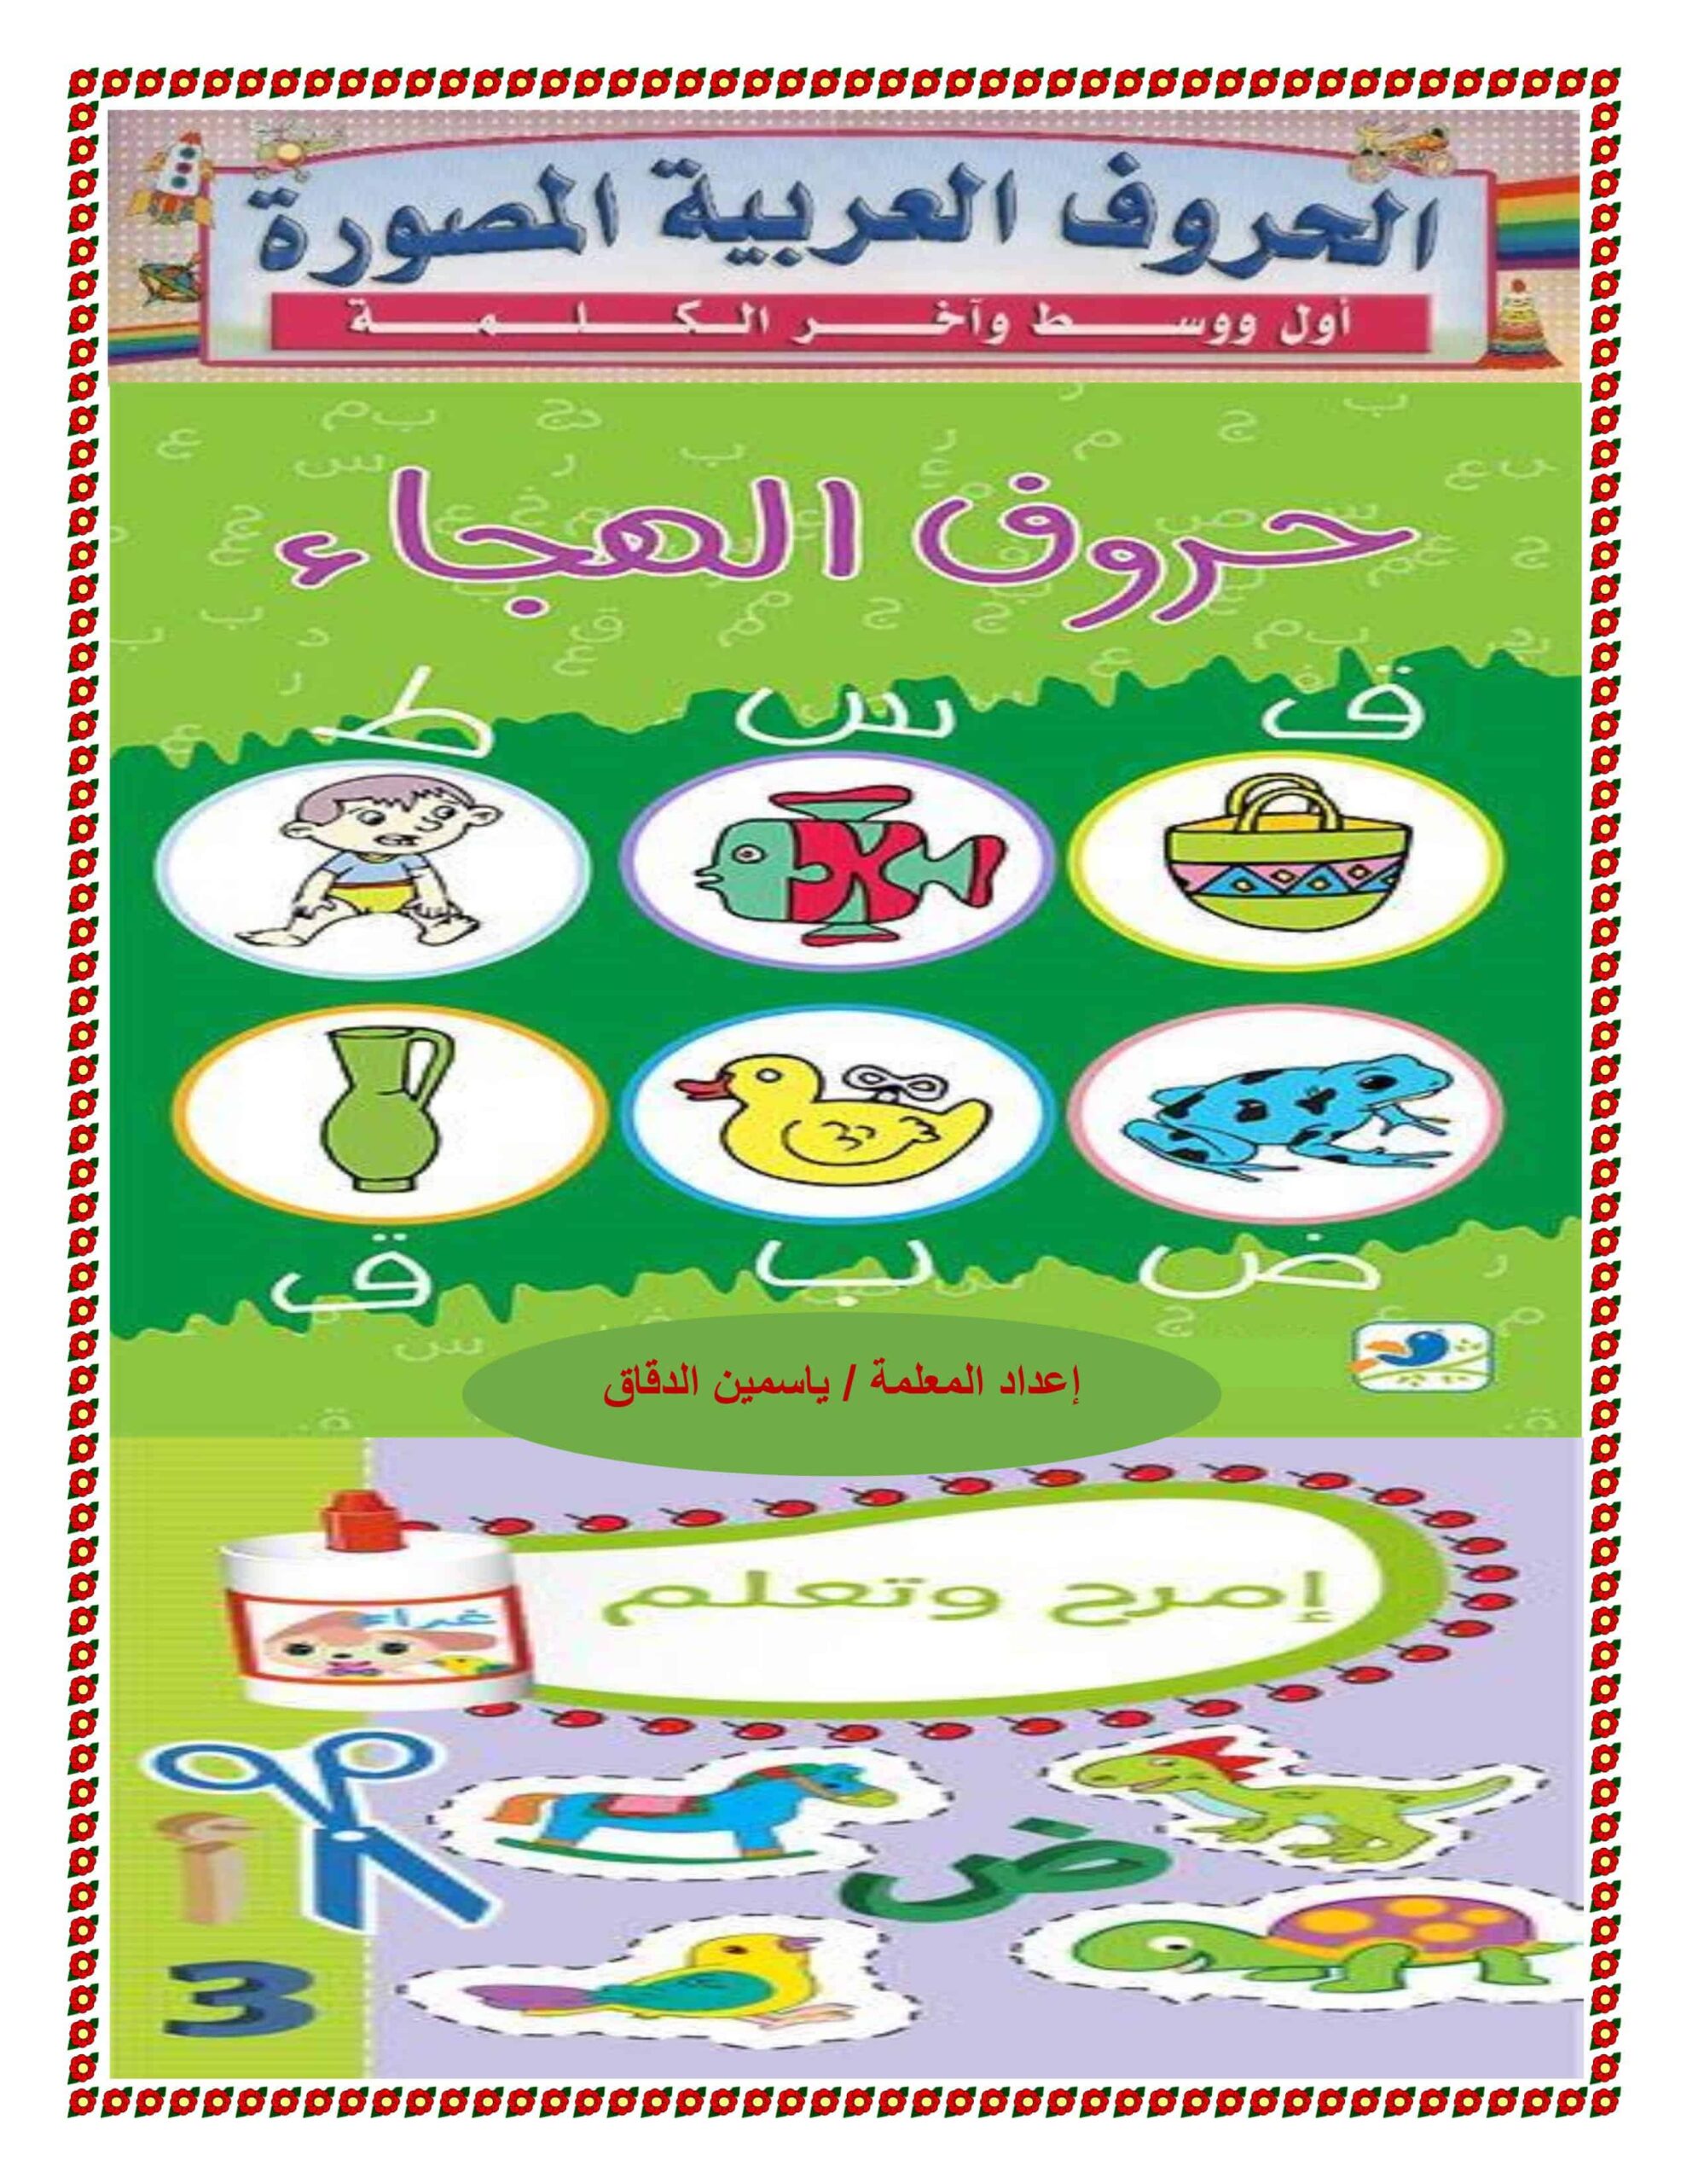 ملزمة الحروف الهجائية أول ووسط وآخرالكلمة اللغة العربية الصف الأول